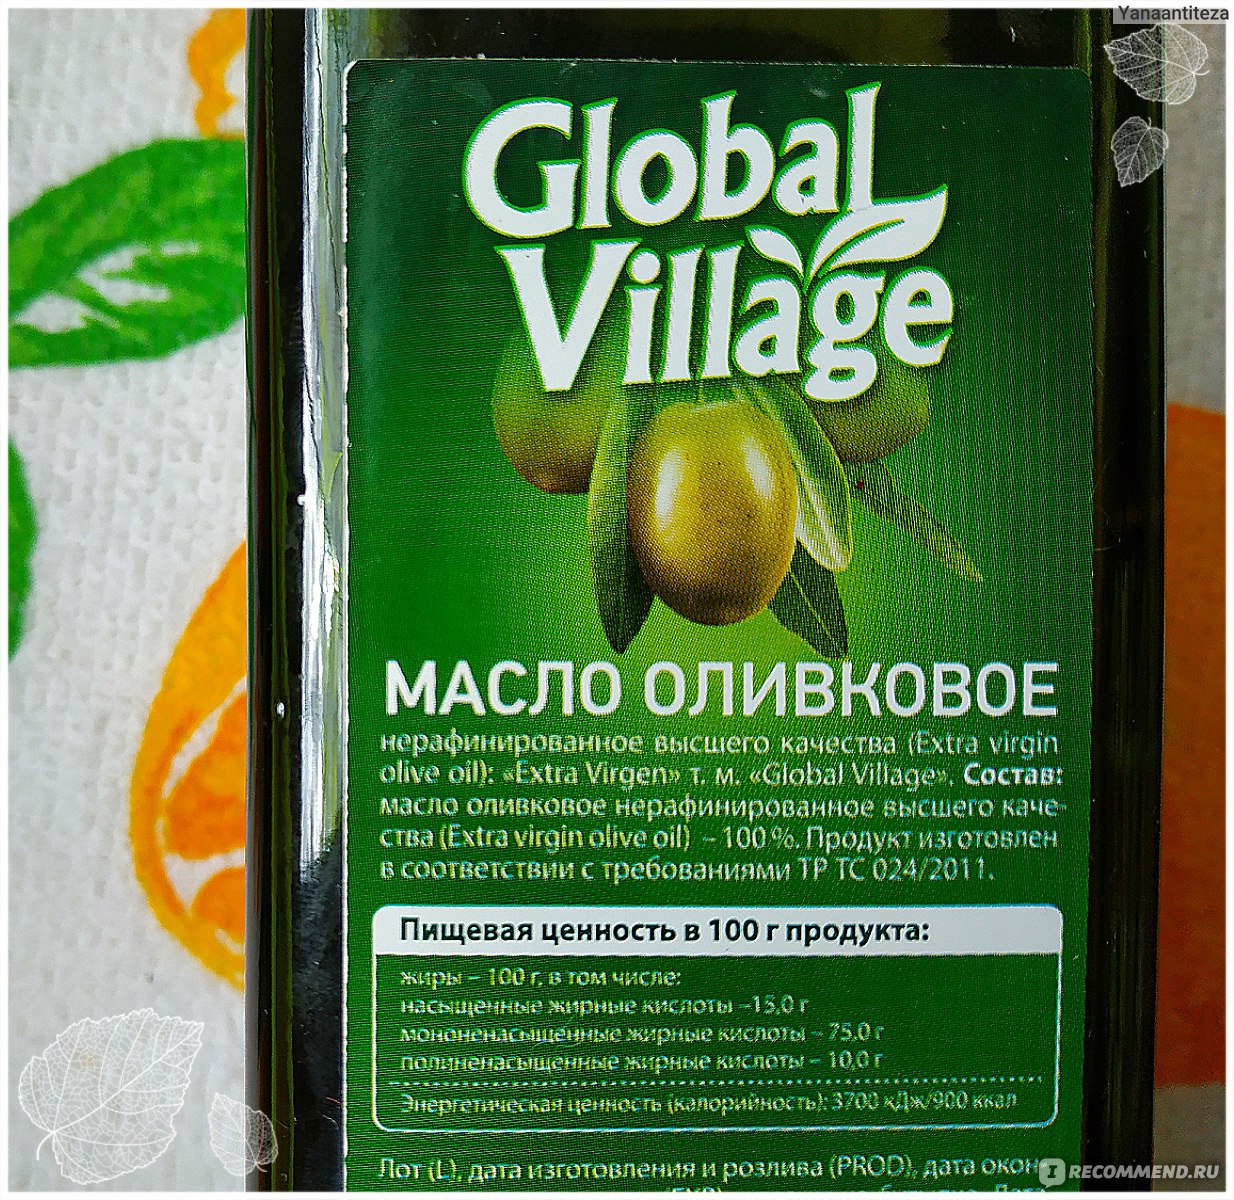 Оливковое масло village. Оливковое масло Global Village. Глобал Вилладж масло оливковое. Оливковое масло Global Village Classic. Global Village оливковое масло кластк.